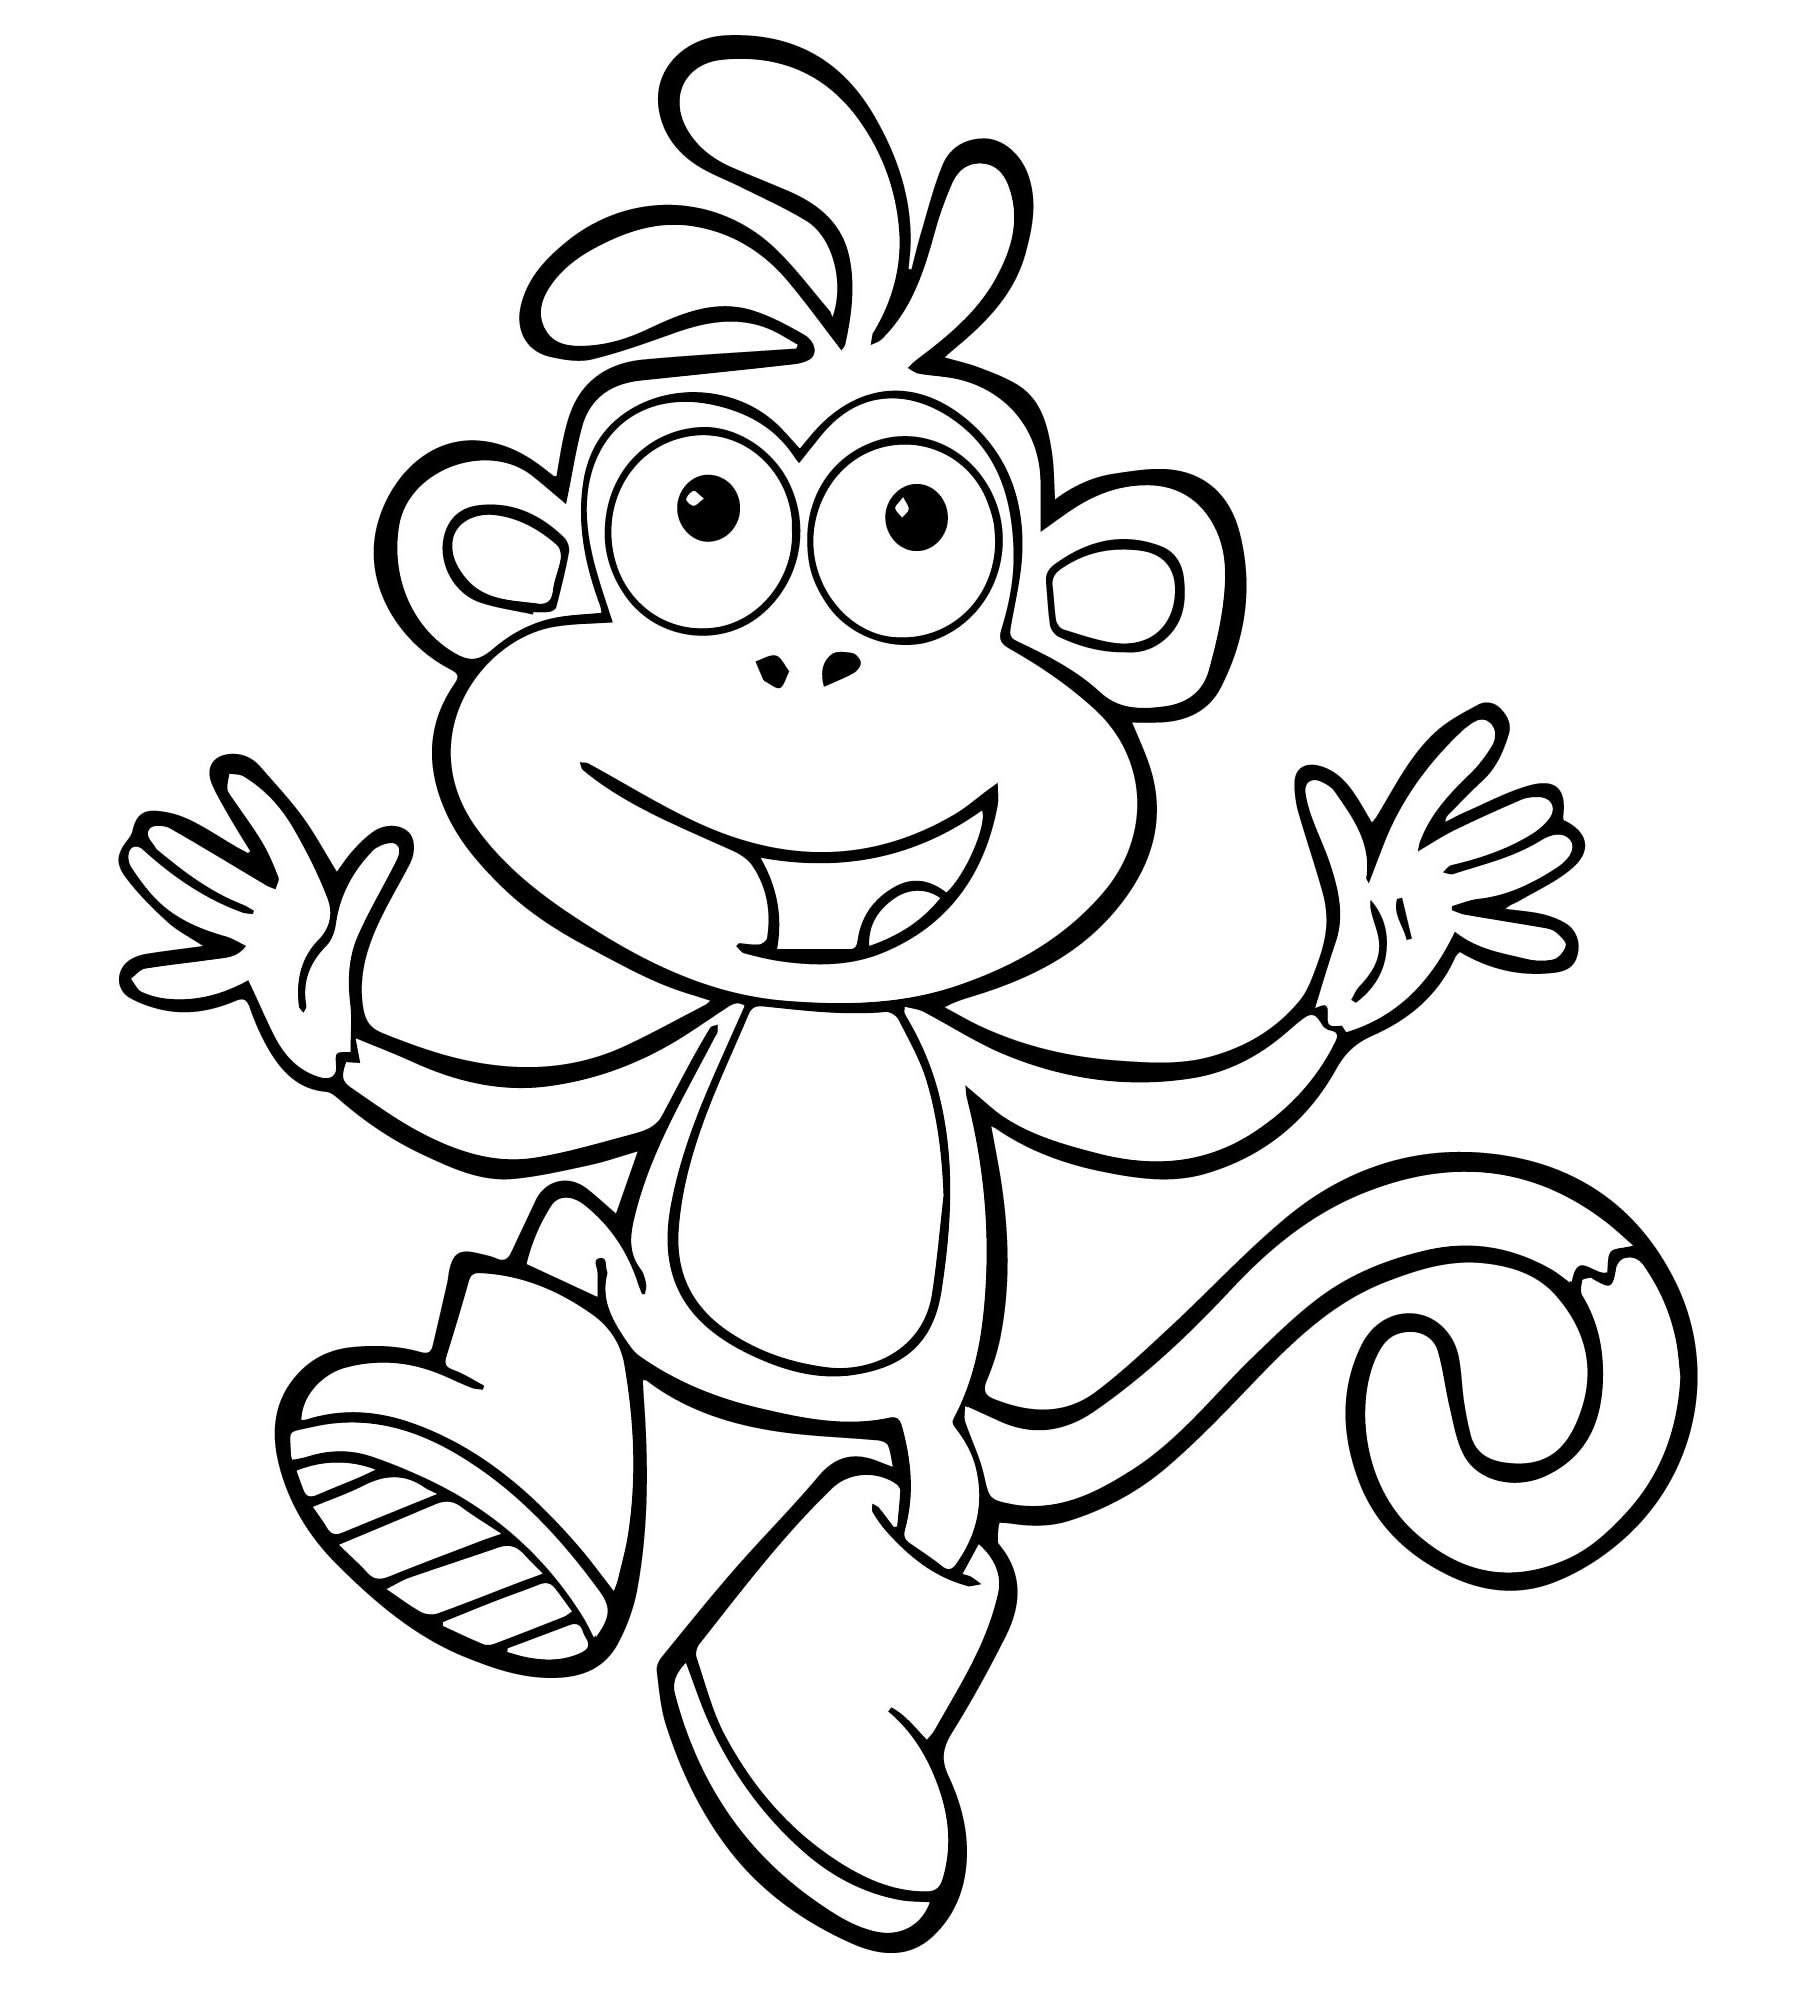 Раскраска Обезьянка | Раскраски обезьянки. Раскраска обезьяна для детей